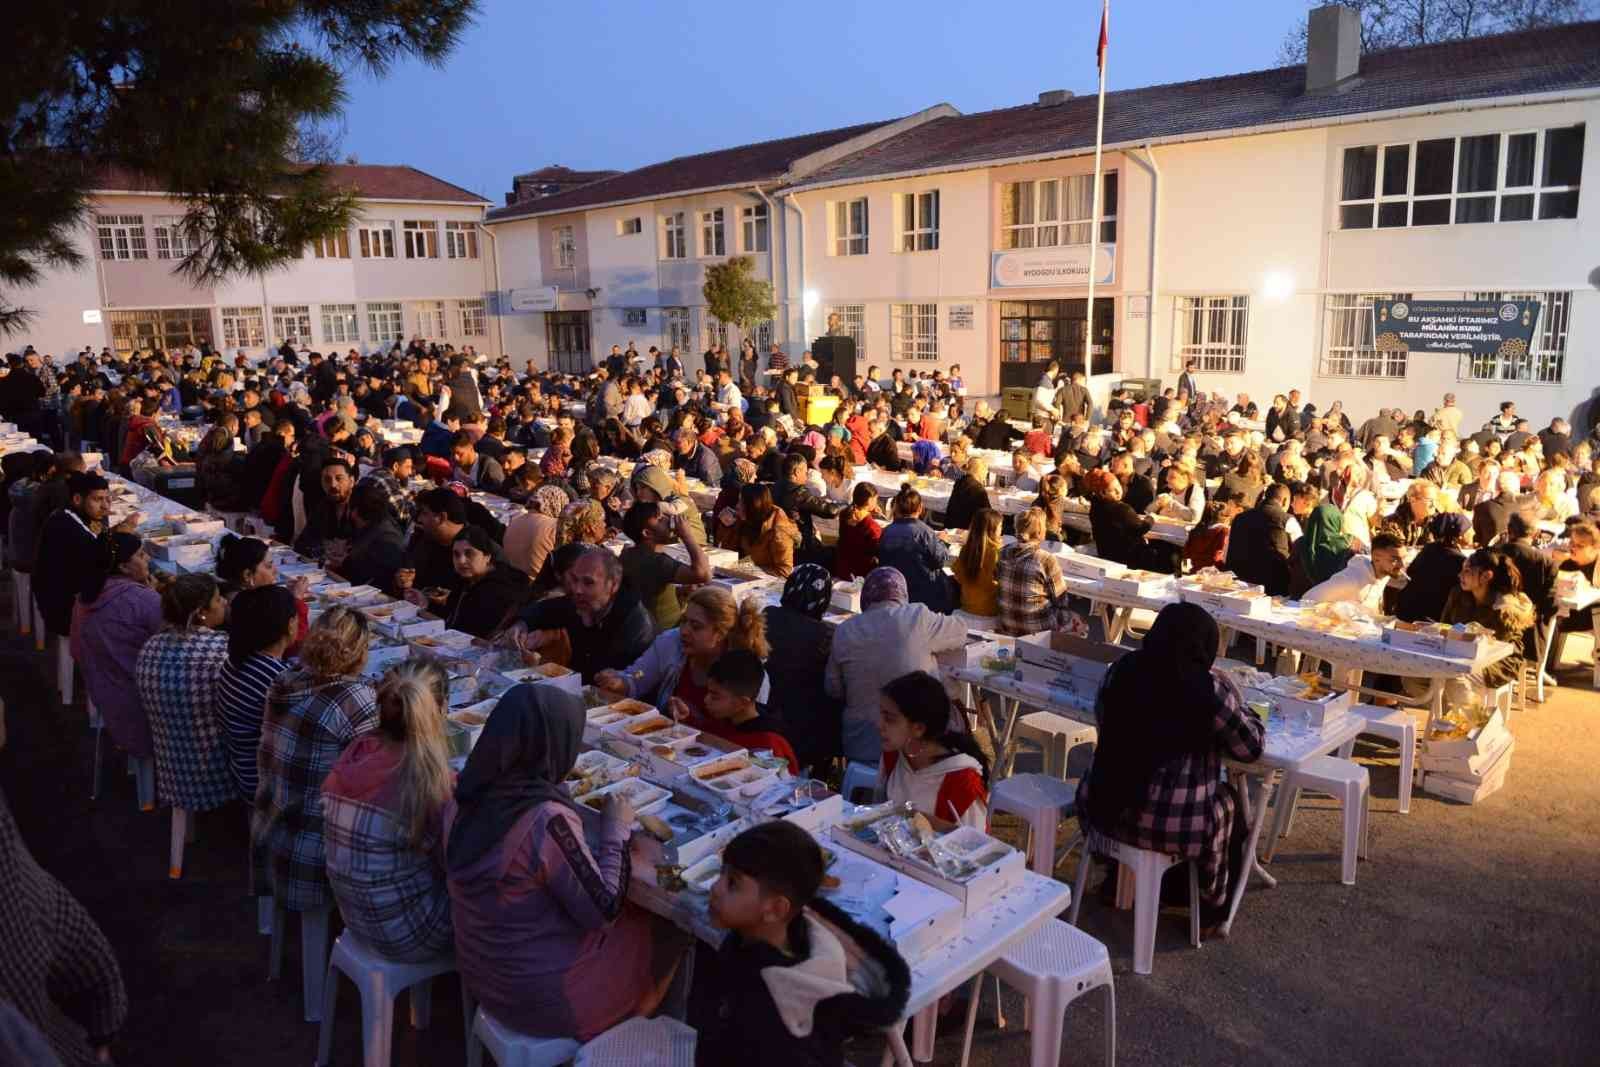 Tekirdağ’ın Süleymanpaşa ilçesinde düzenlenen iftar programlarına on binlerce vatandaş katıldı. Süleymanpaşa Belediyesi tarafından “Gönlümüz Bir ...